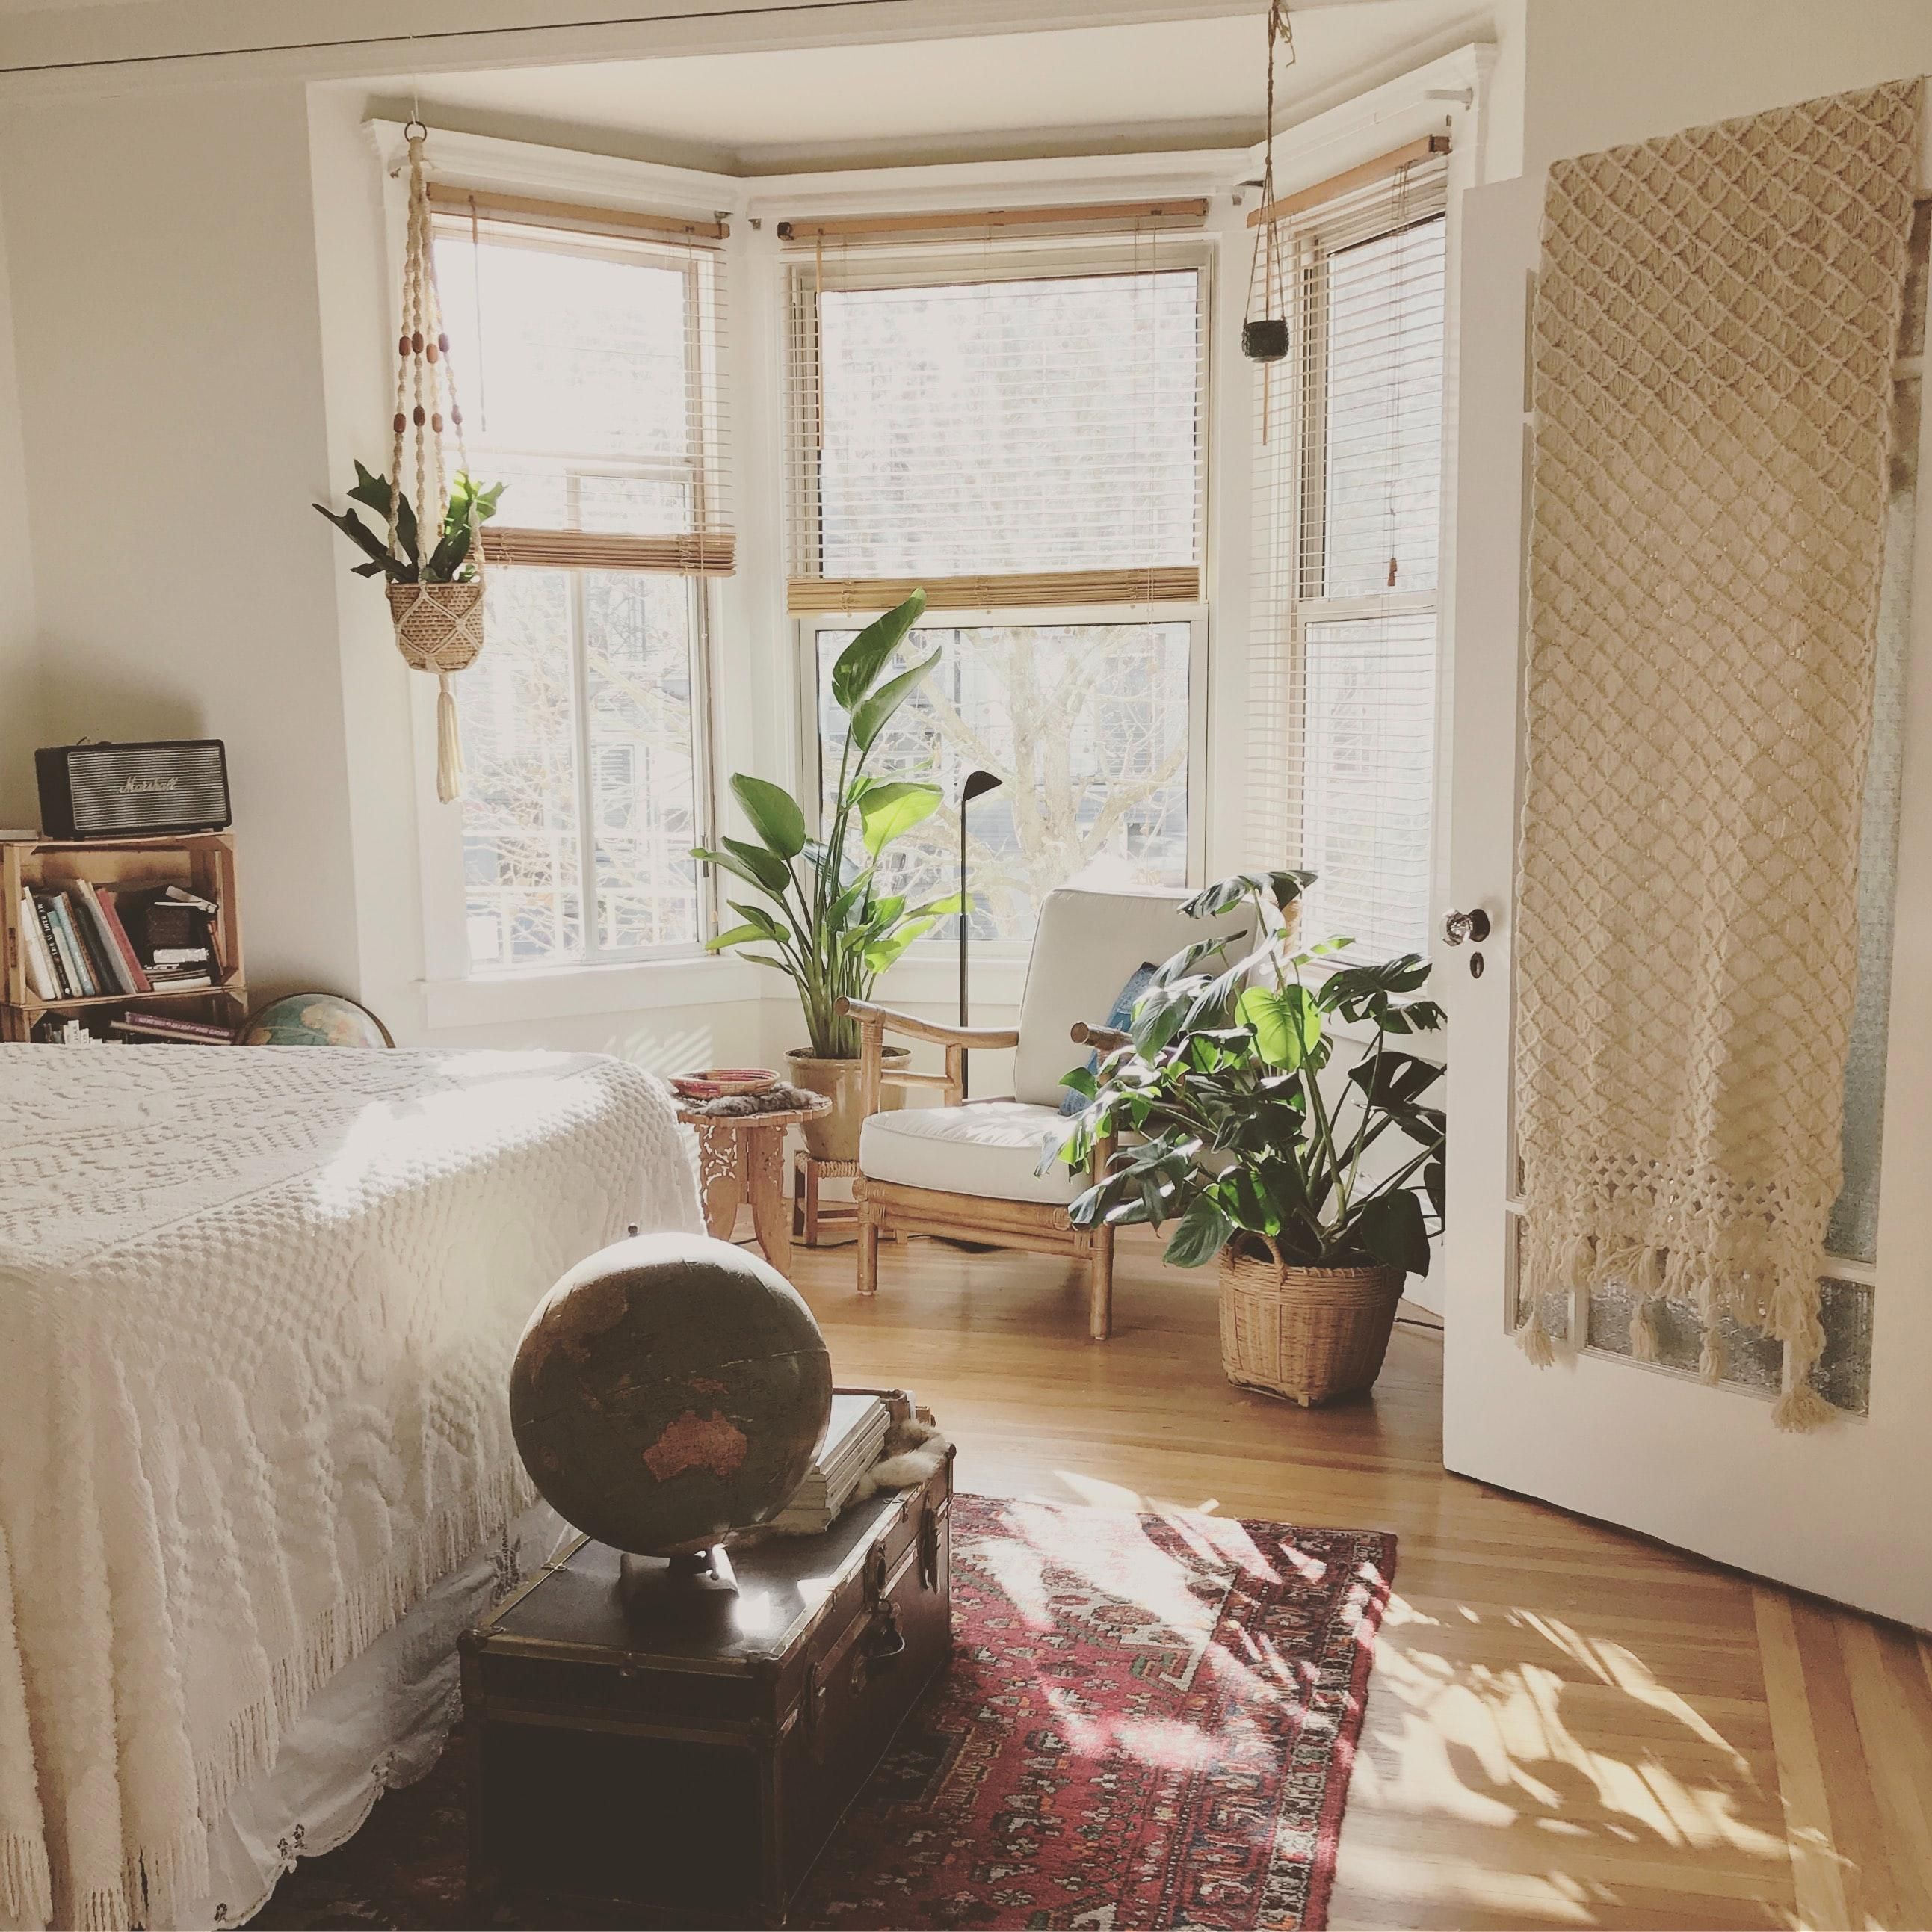 Плохой сон и самочувствие: какие растения нельзя держать в спальне - Недвижимость